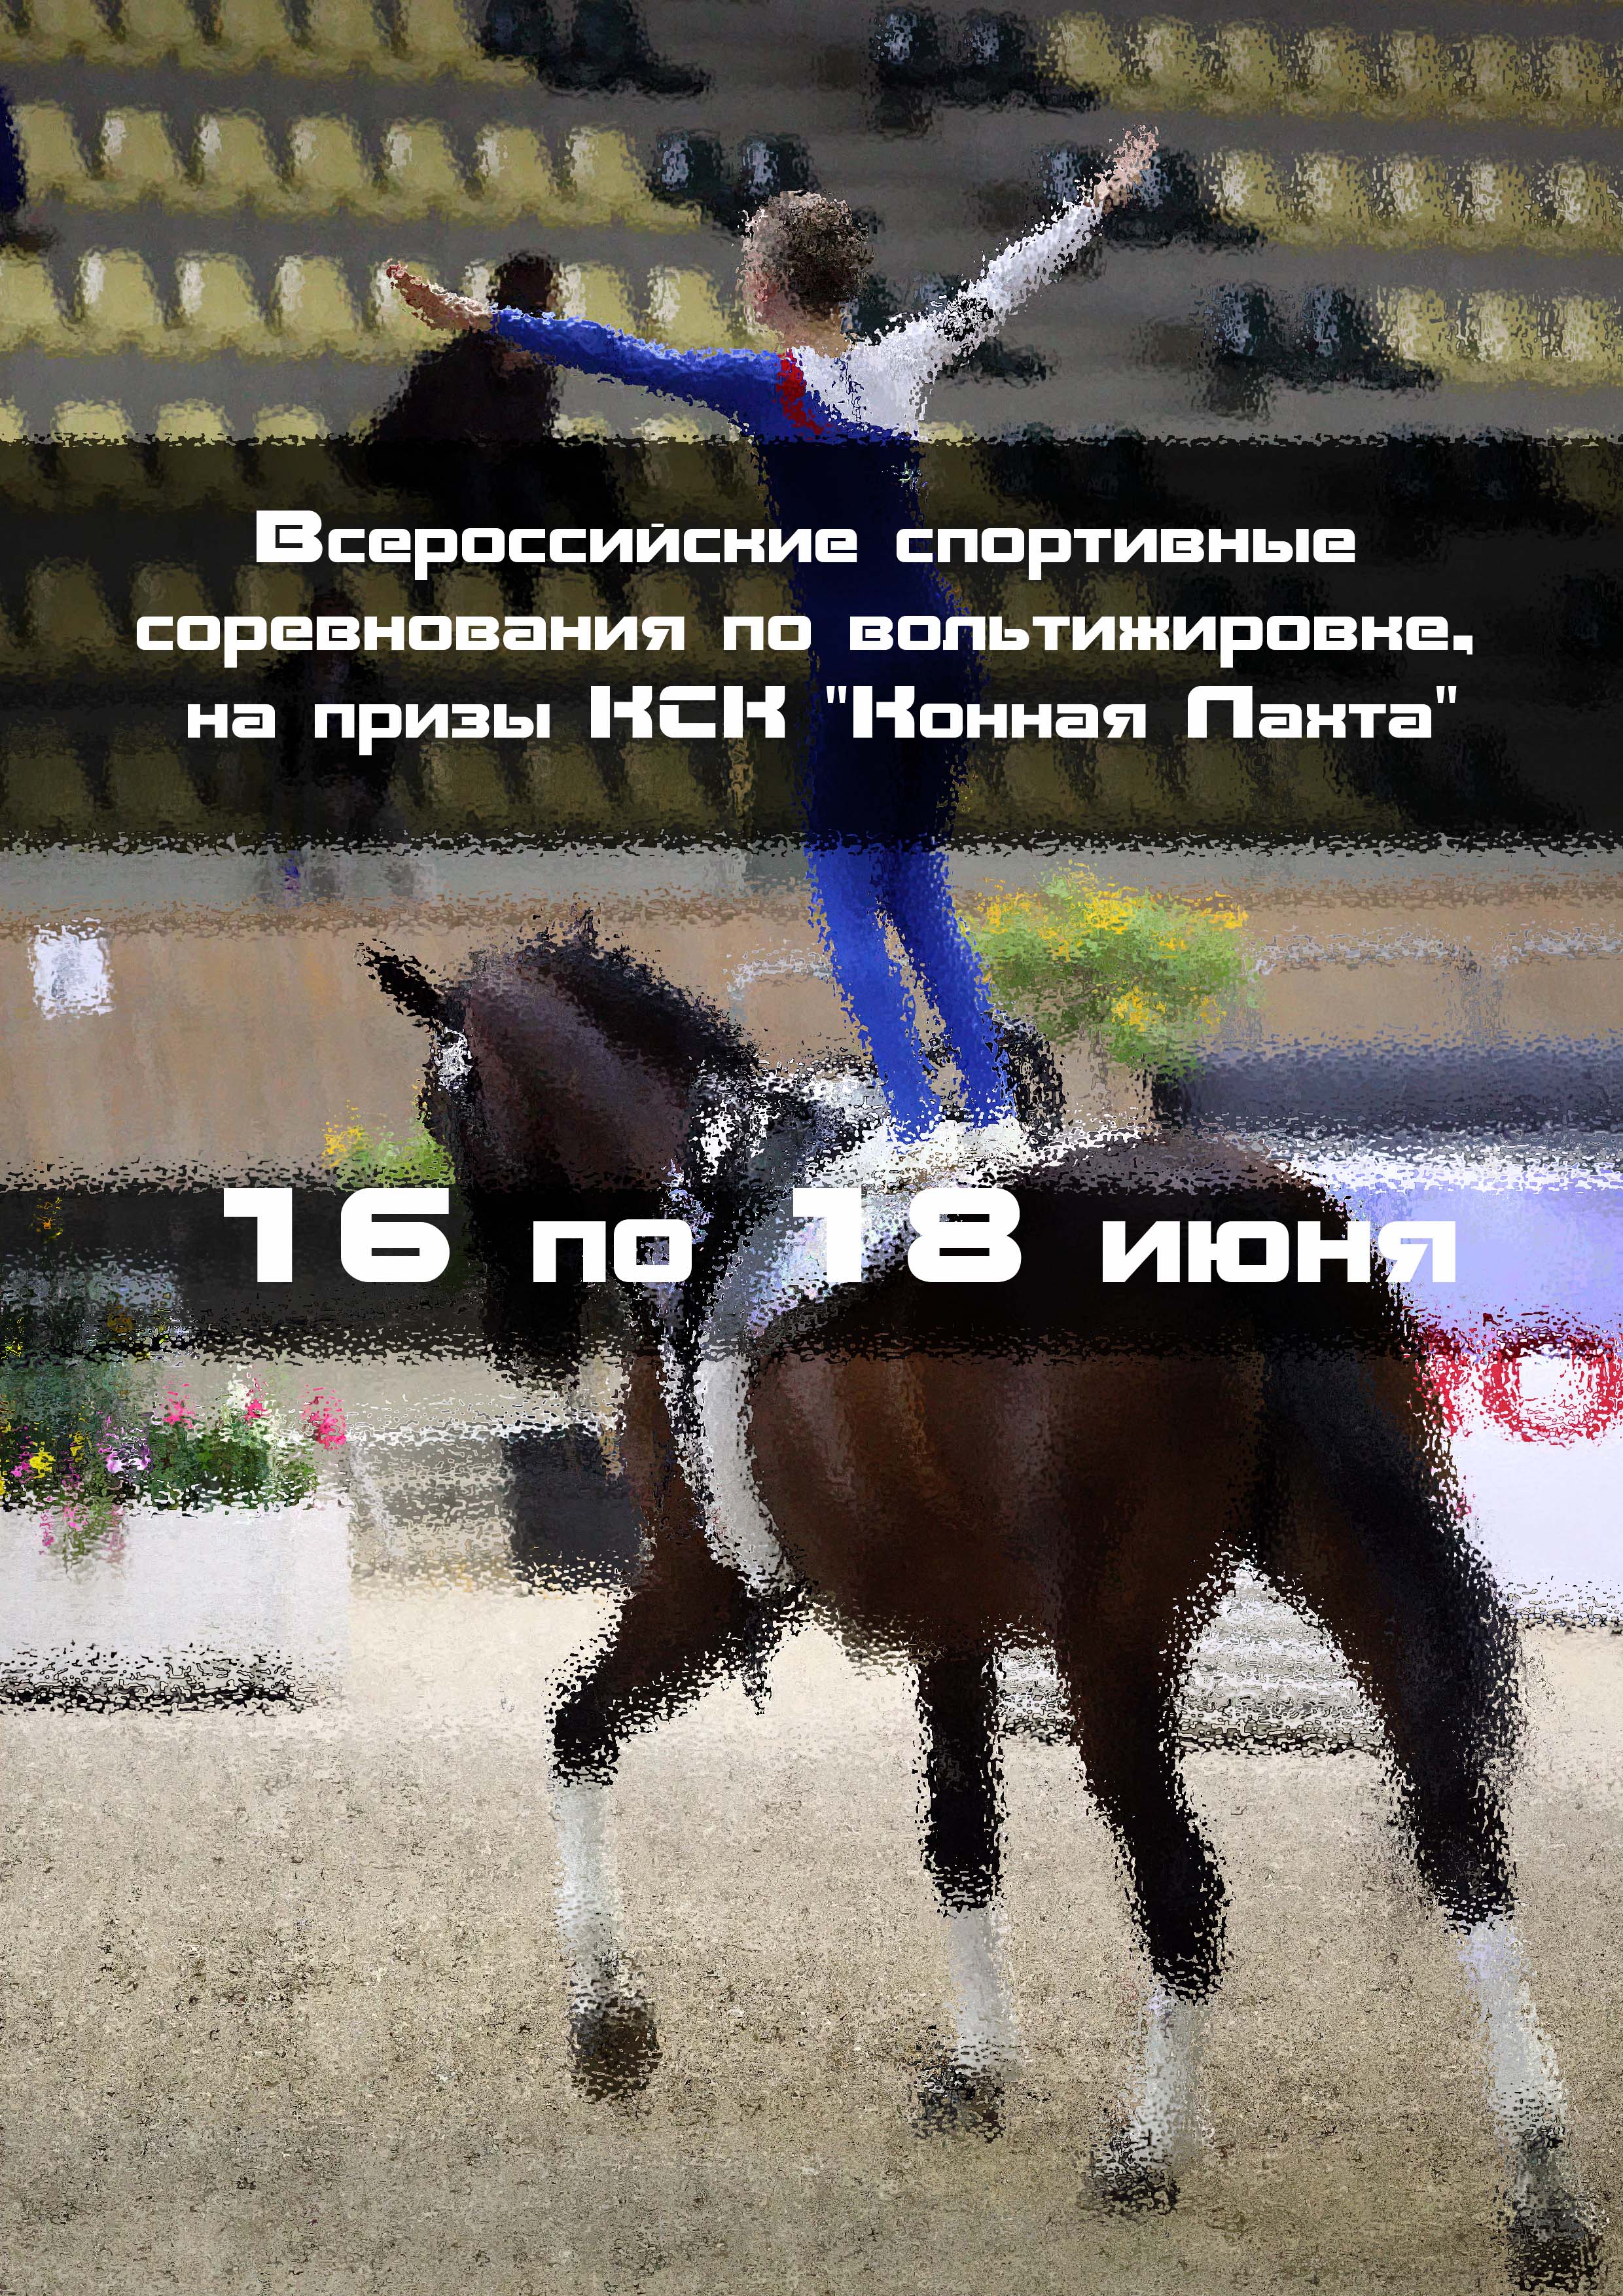 Всероссийские спортивные соревнования по вольтижировке, на призы КСК "Конная Лахта" 16  հունիսի
 2023  տարի
 